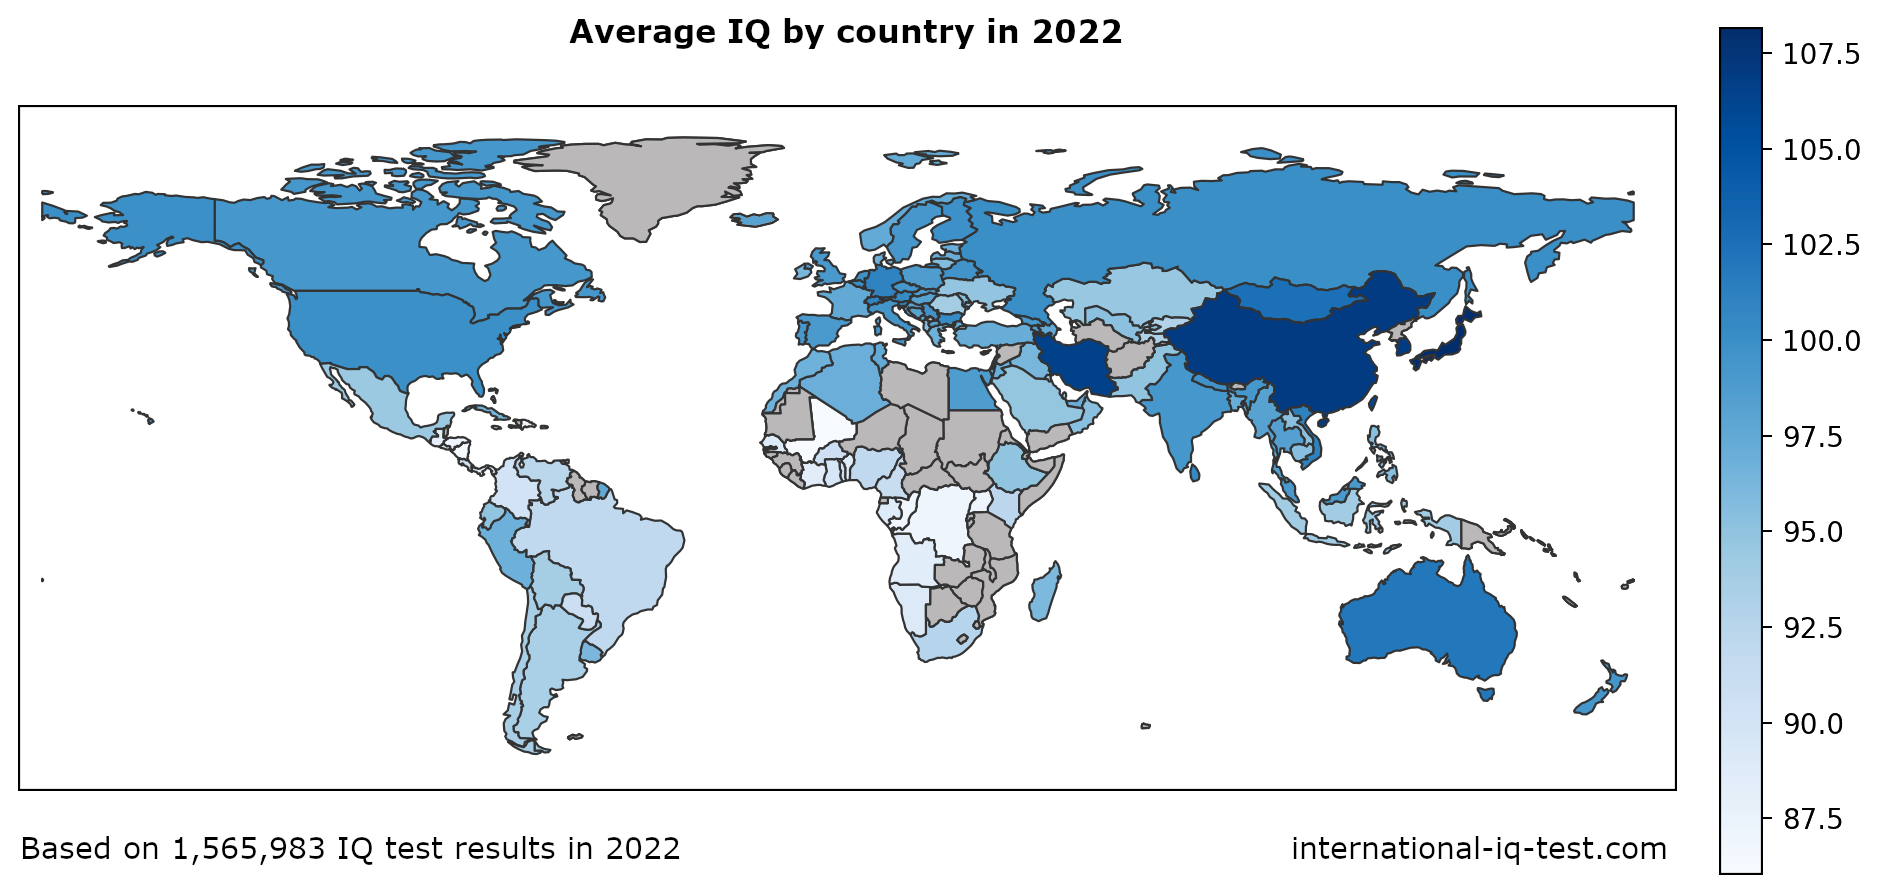 Zemljevid sveta, na katerem je prikazan povprečni inteligenčni kvocient v posamezni državi leta 2022 z uporabo odtenkov modre barve od najsvetlejšega do najtemnejšega